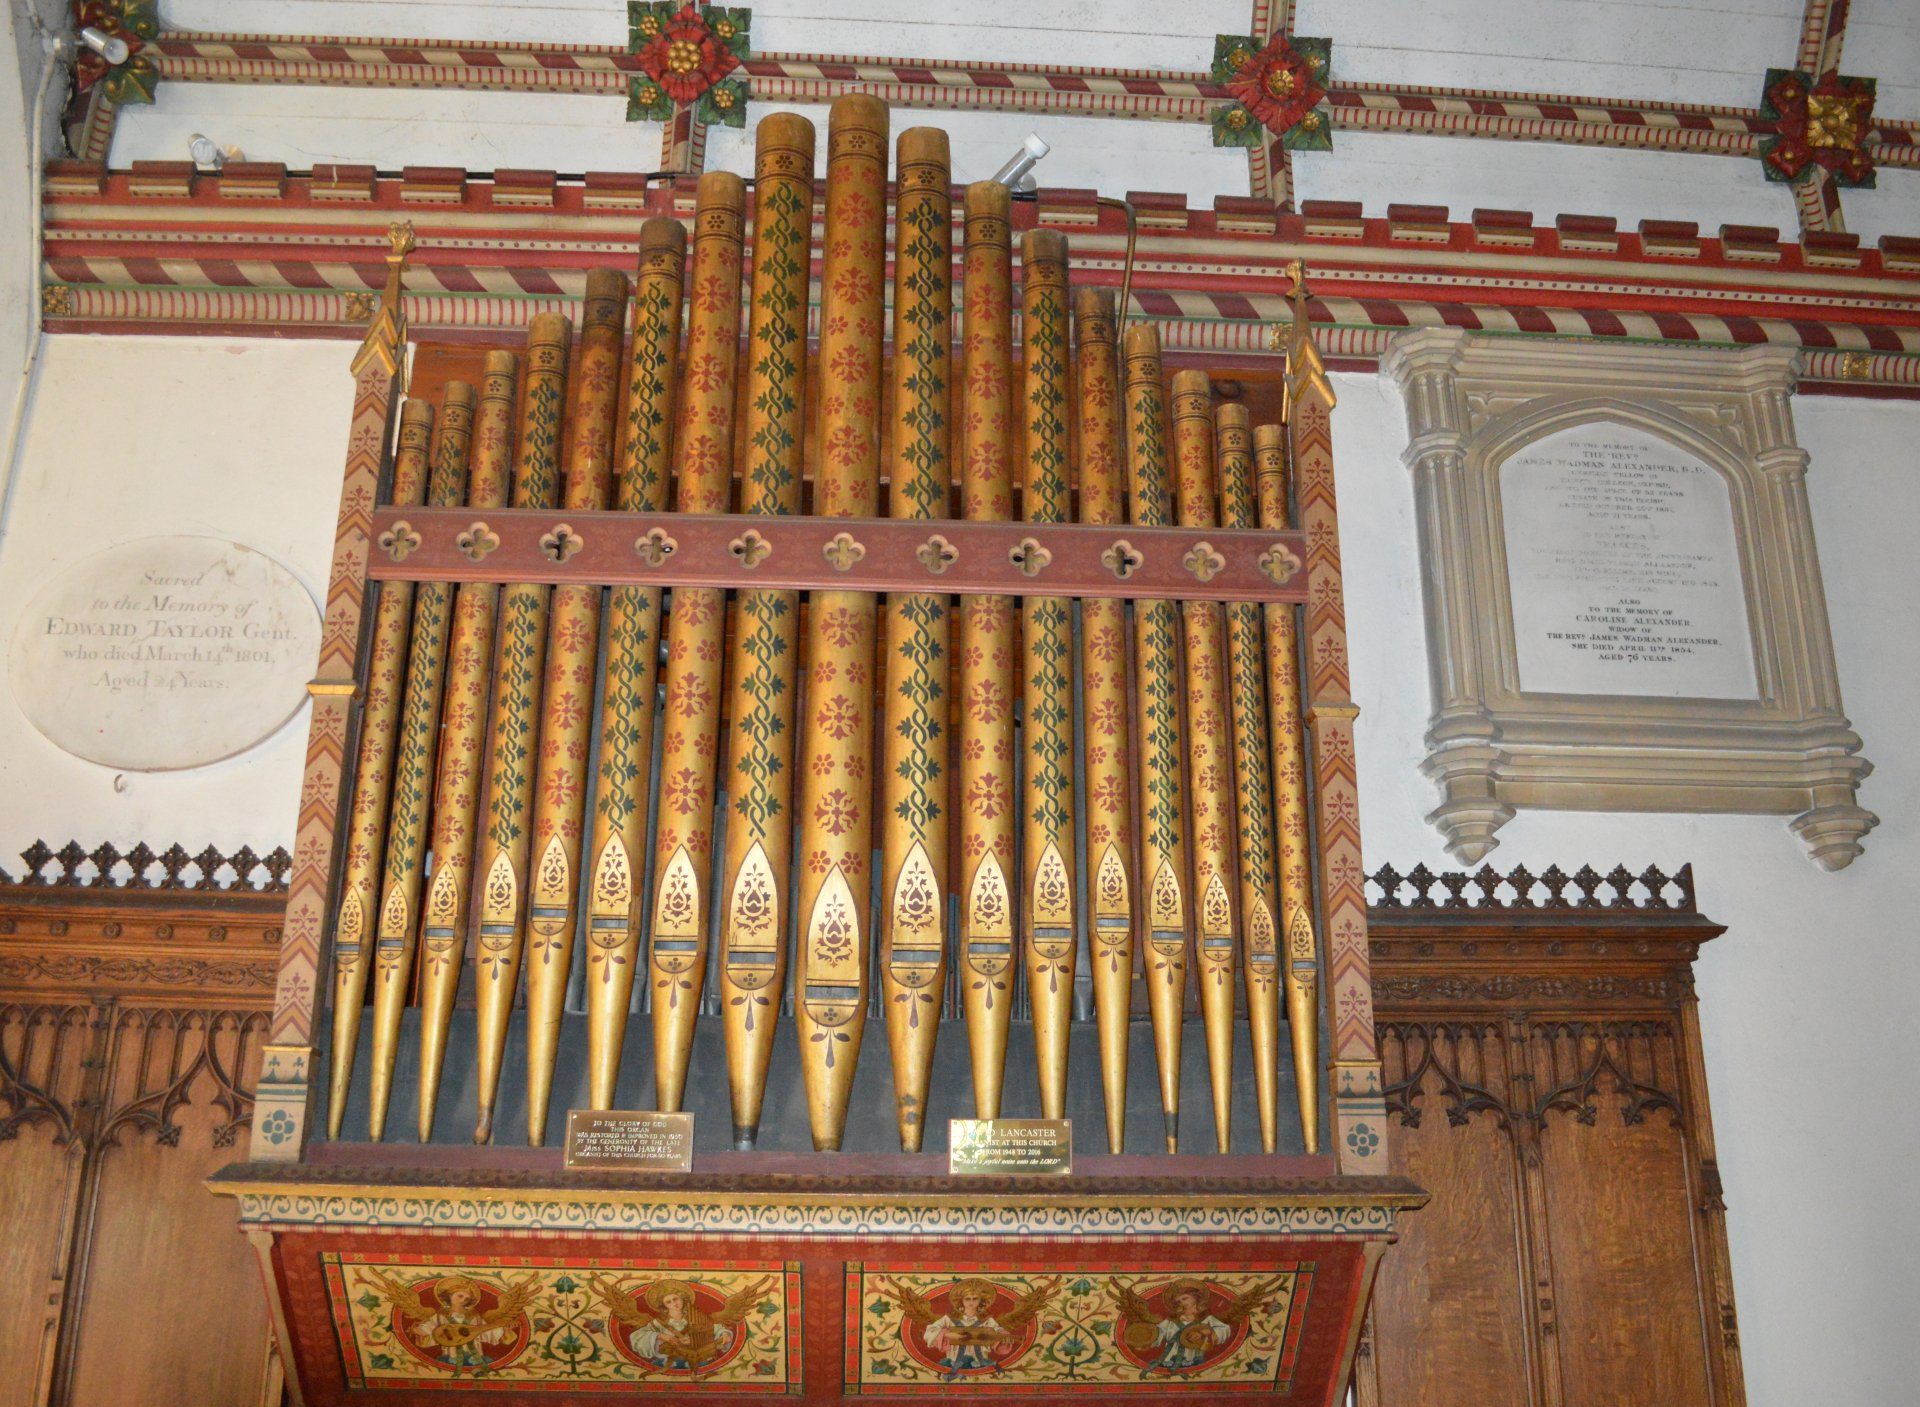 Organ in All Saints church